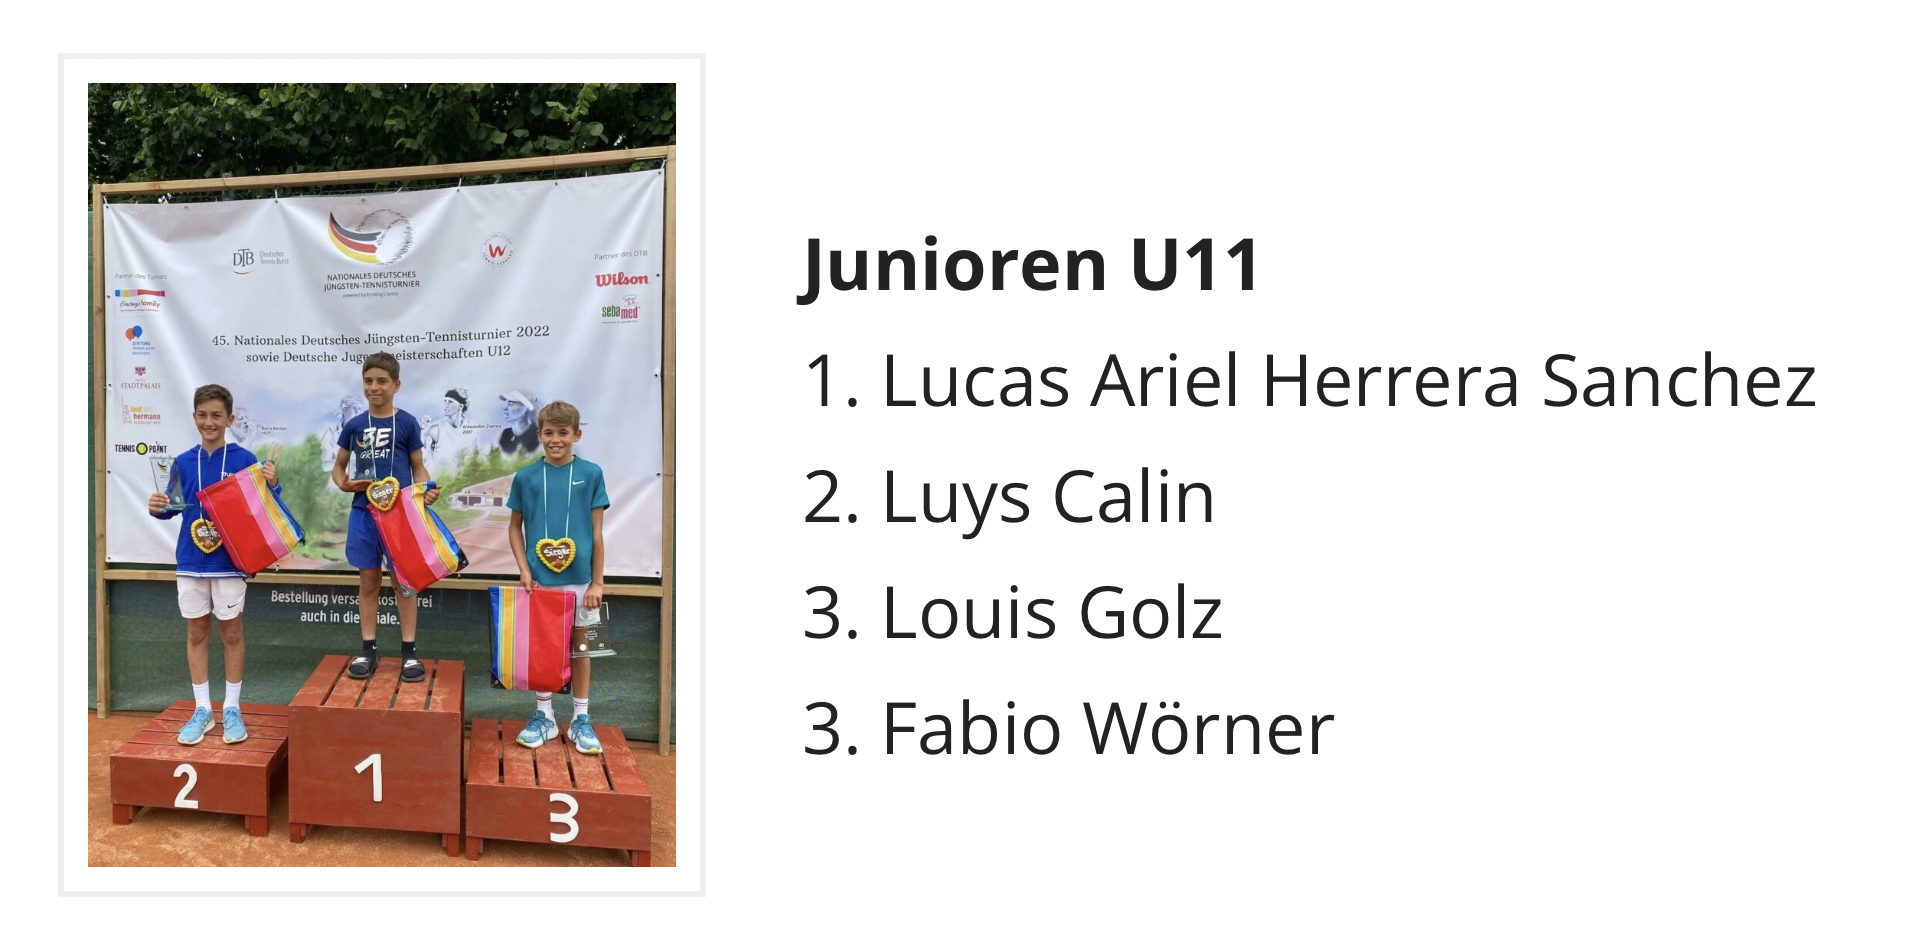 Siegerehrung Nationales Deutsches Jüngsten-Tennisturnier mit Luys Calin auf dem 2. Platz (Quelle: NDJTT)